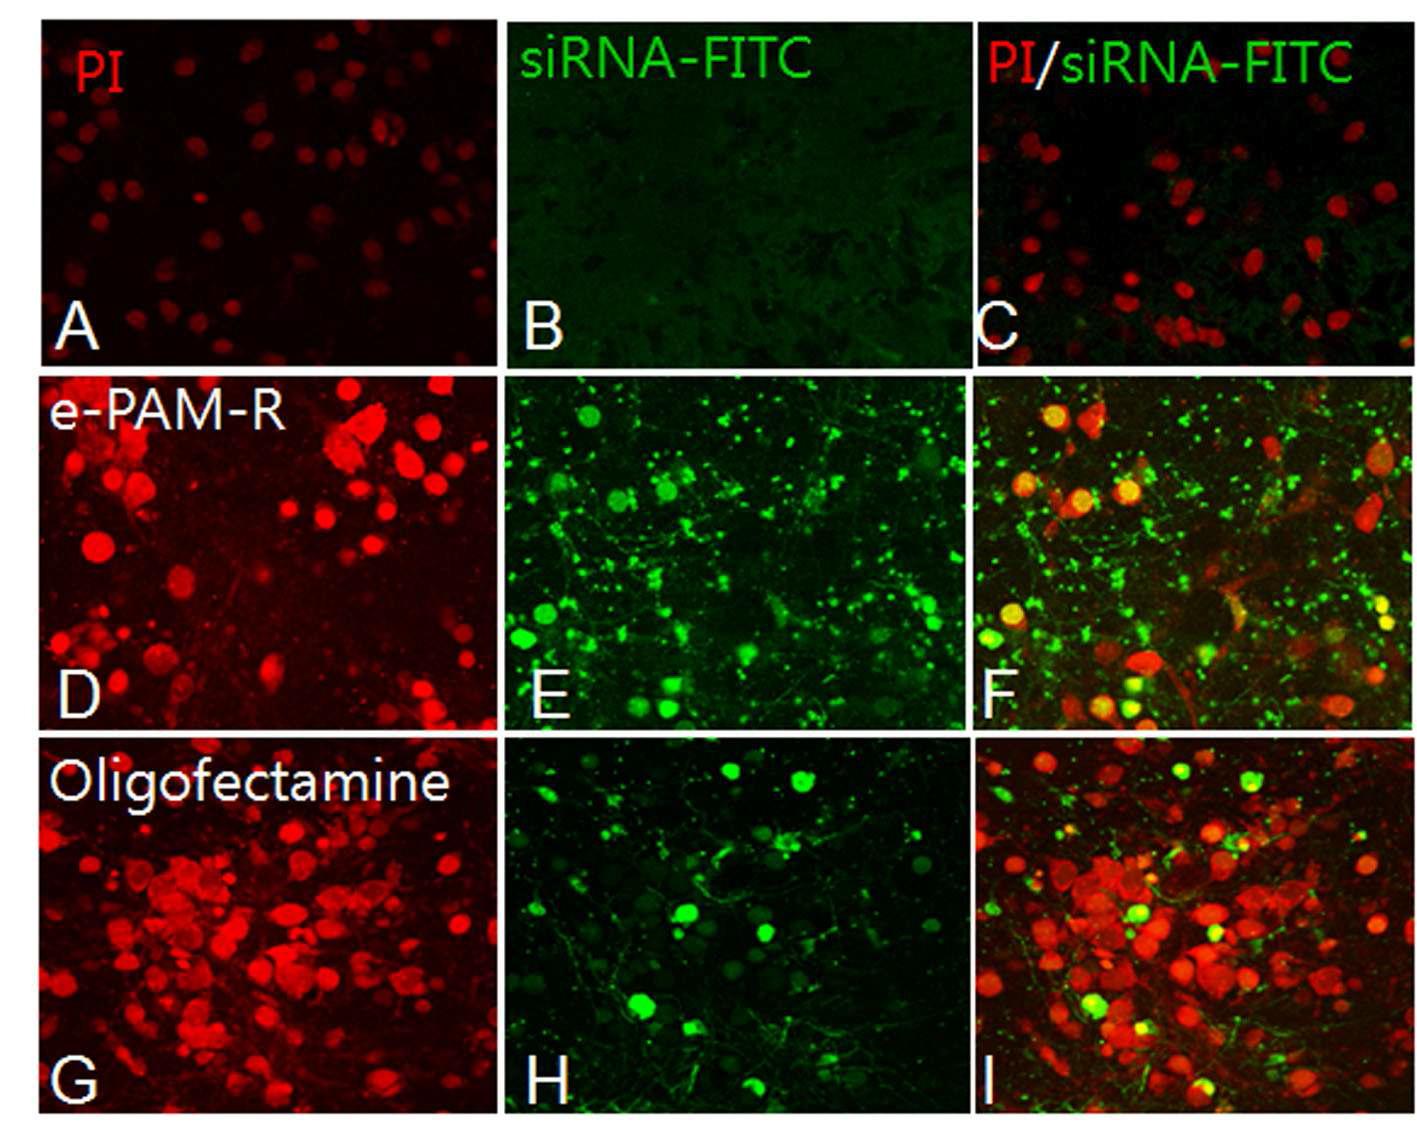 1차 대뇌피질 배양 신경세포에서 siRNA/e-PAM-R 또는 siRNA/oligofectamine복합체를 transfection 후 24 시간 후에 tranfection indicator siRNA의 전달 효율을 confocal microscopy를 통해 비교 조사함.